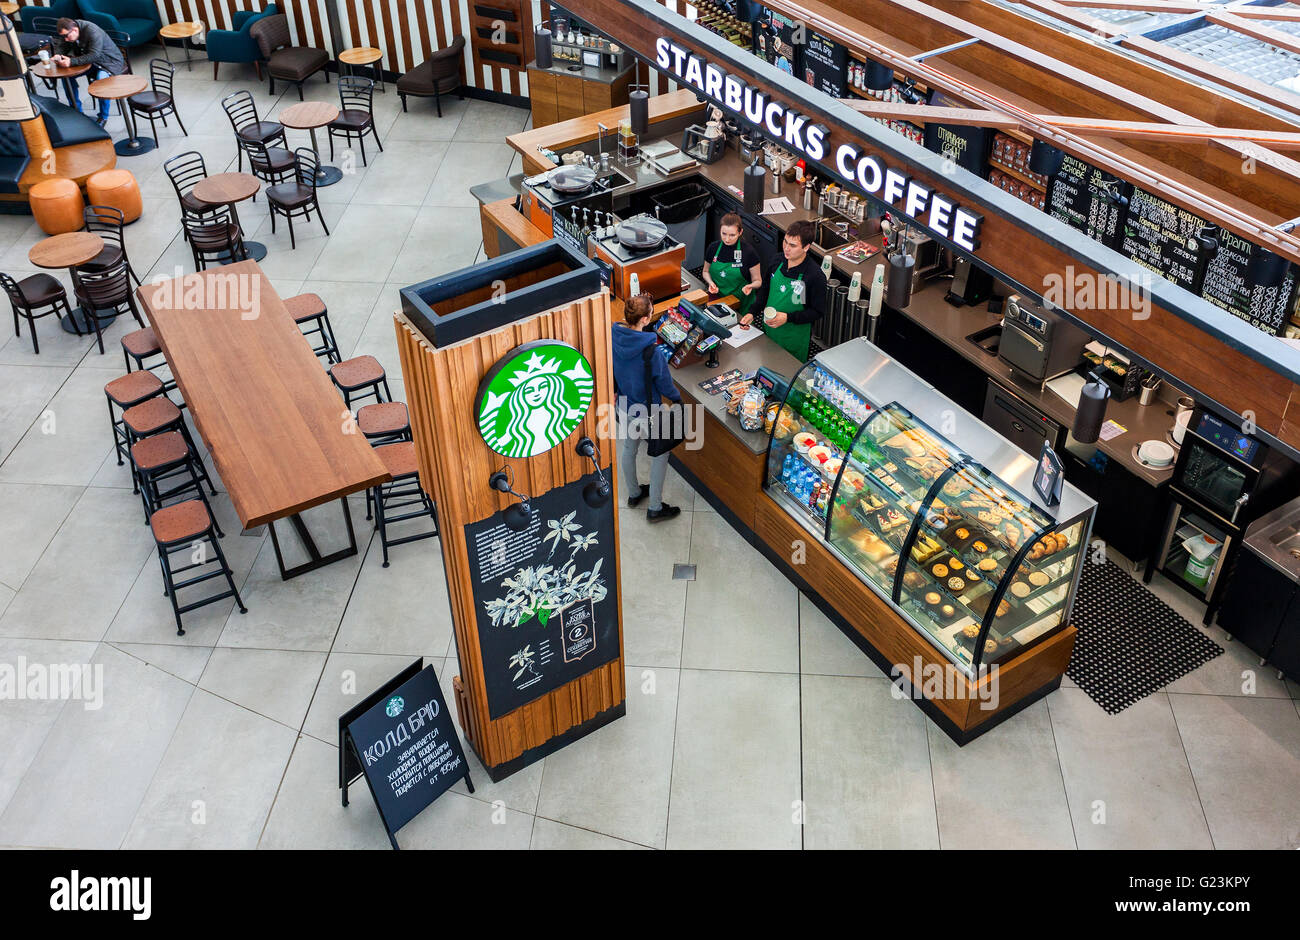 Starbucks cafe interior in Samara airport Kurumoch Stock Photo